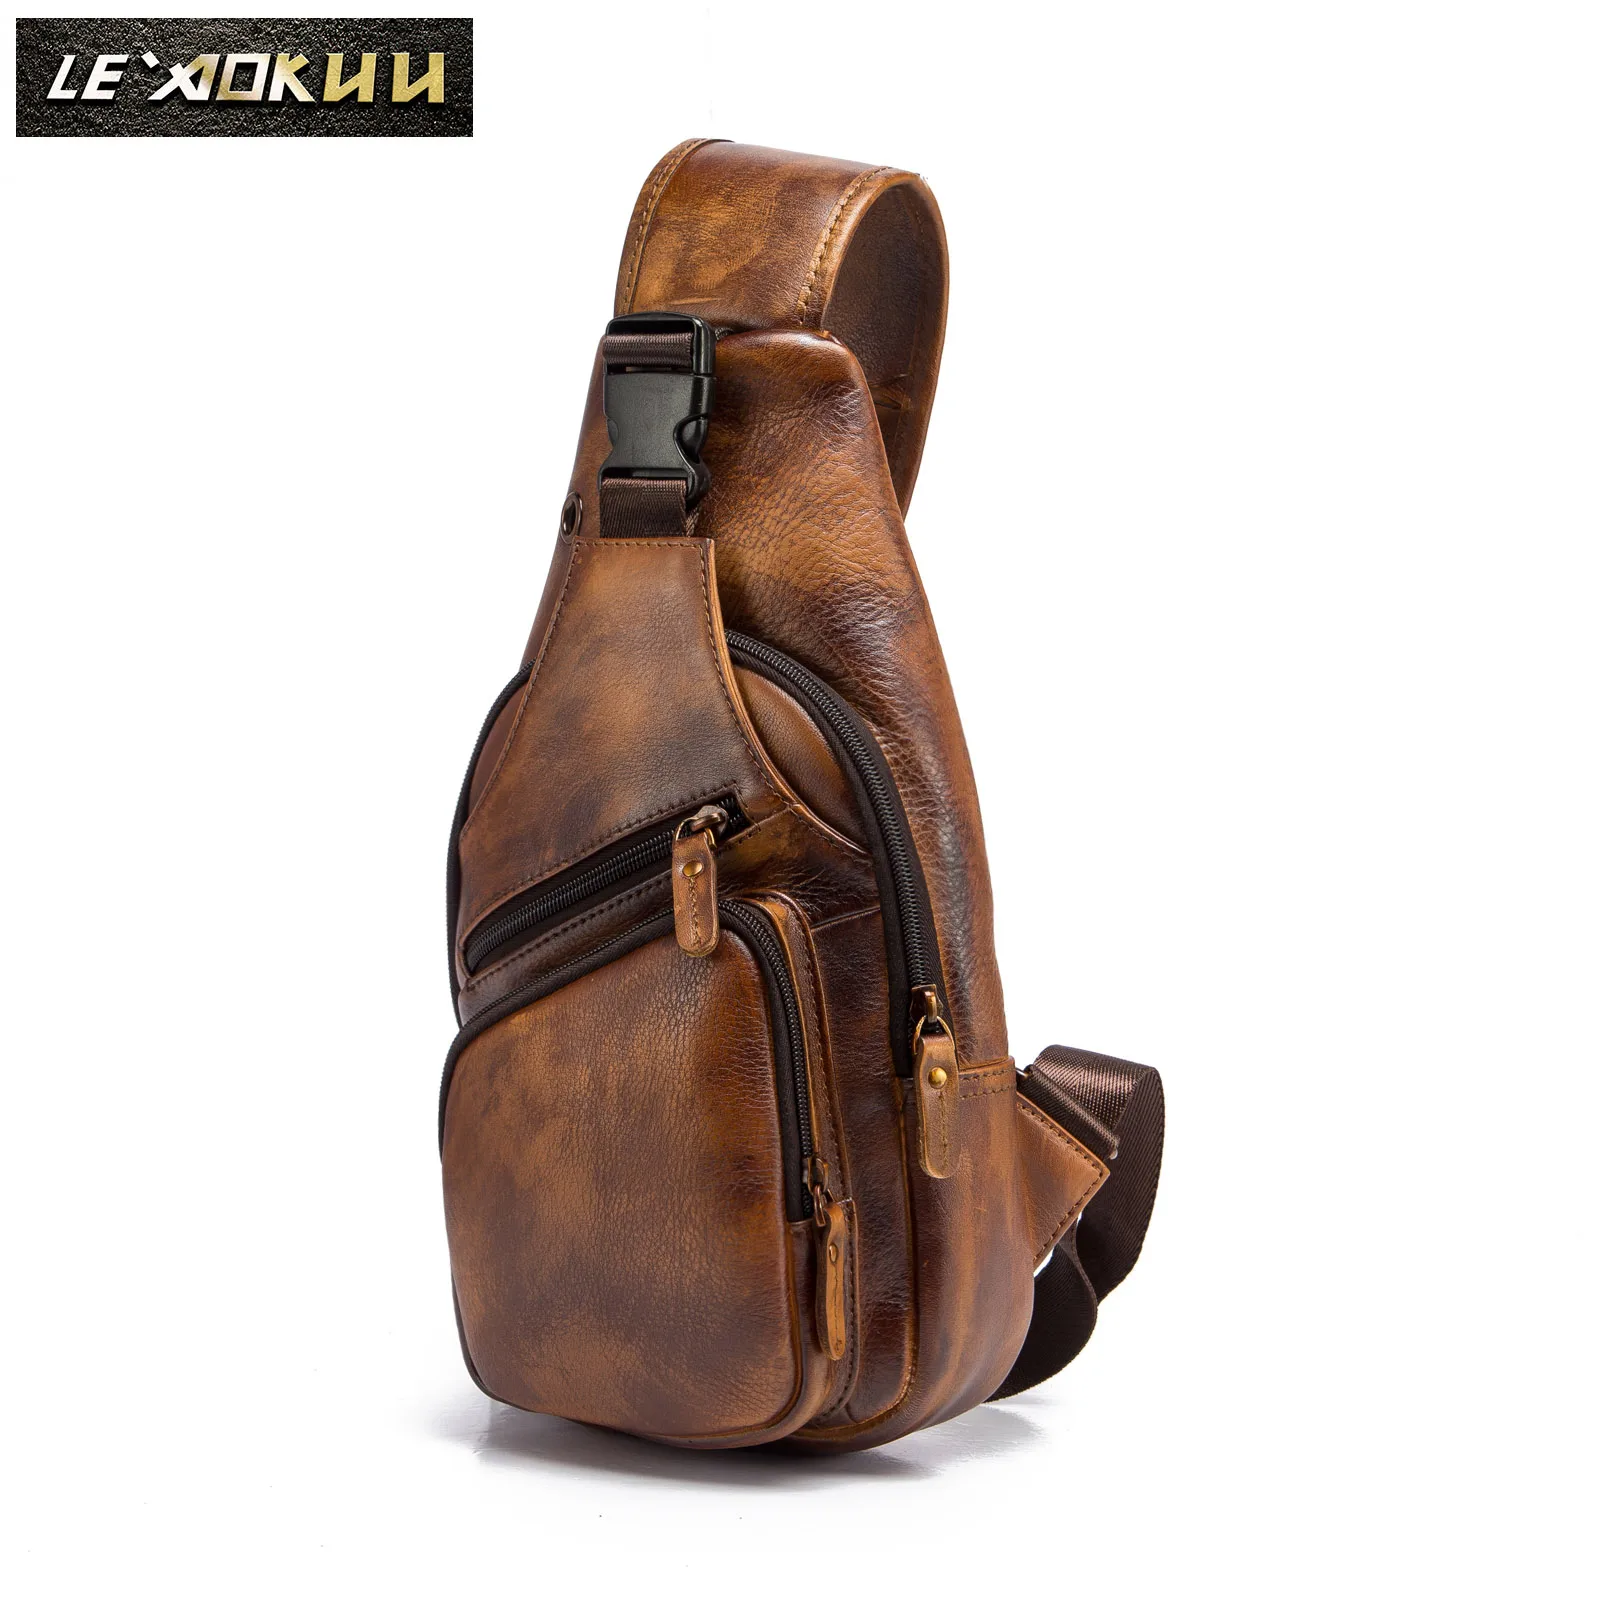 Мужская Оригинальная Повседневная кожаная сумка Crazy horse через плечо, Дизайнерская Дорожная сумка на одно плечо, мужской рюкзак 8015lb